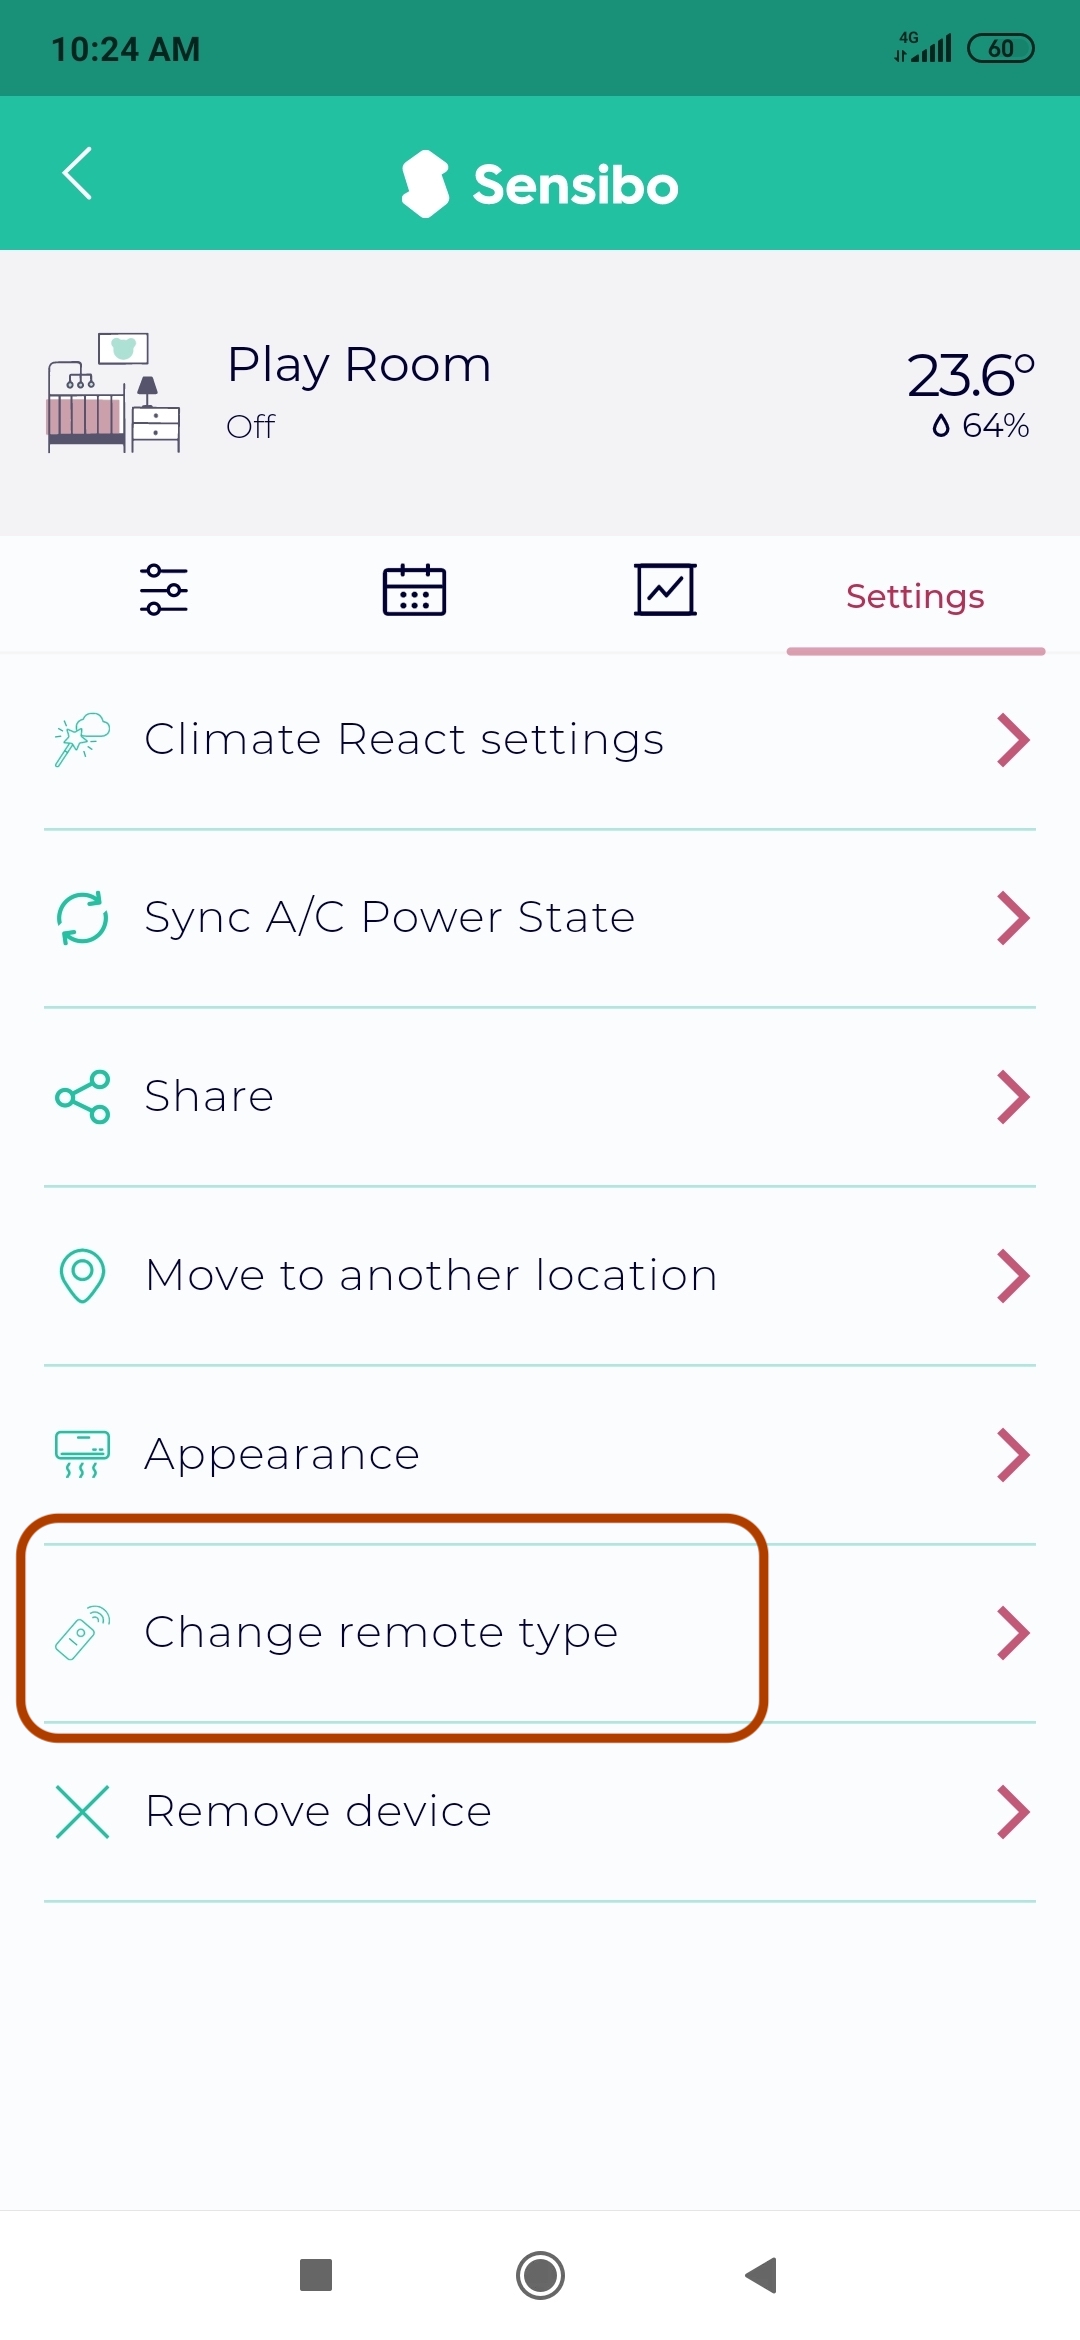 Sensibo device settings menu change remote type